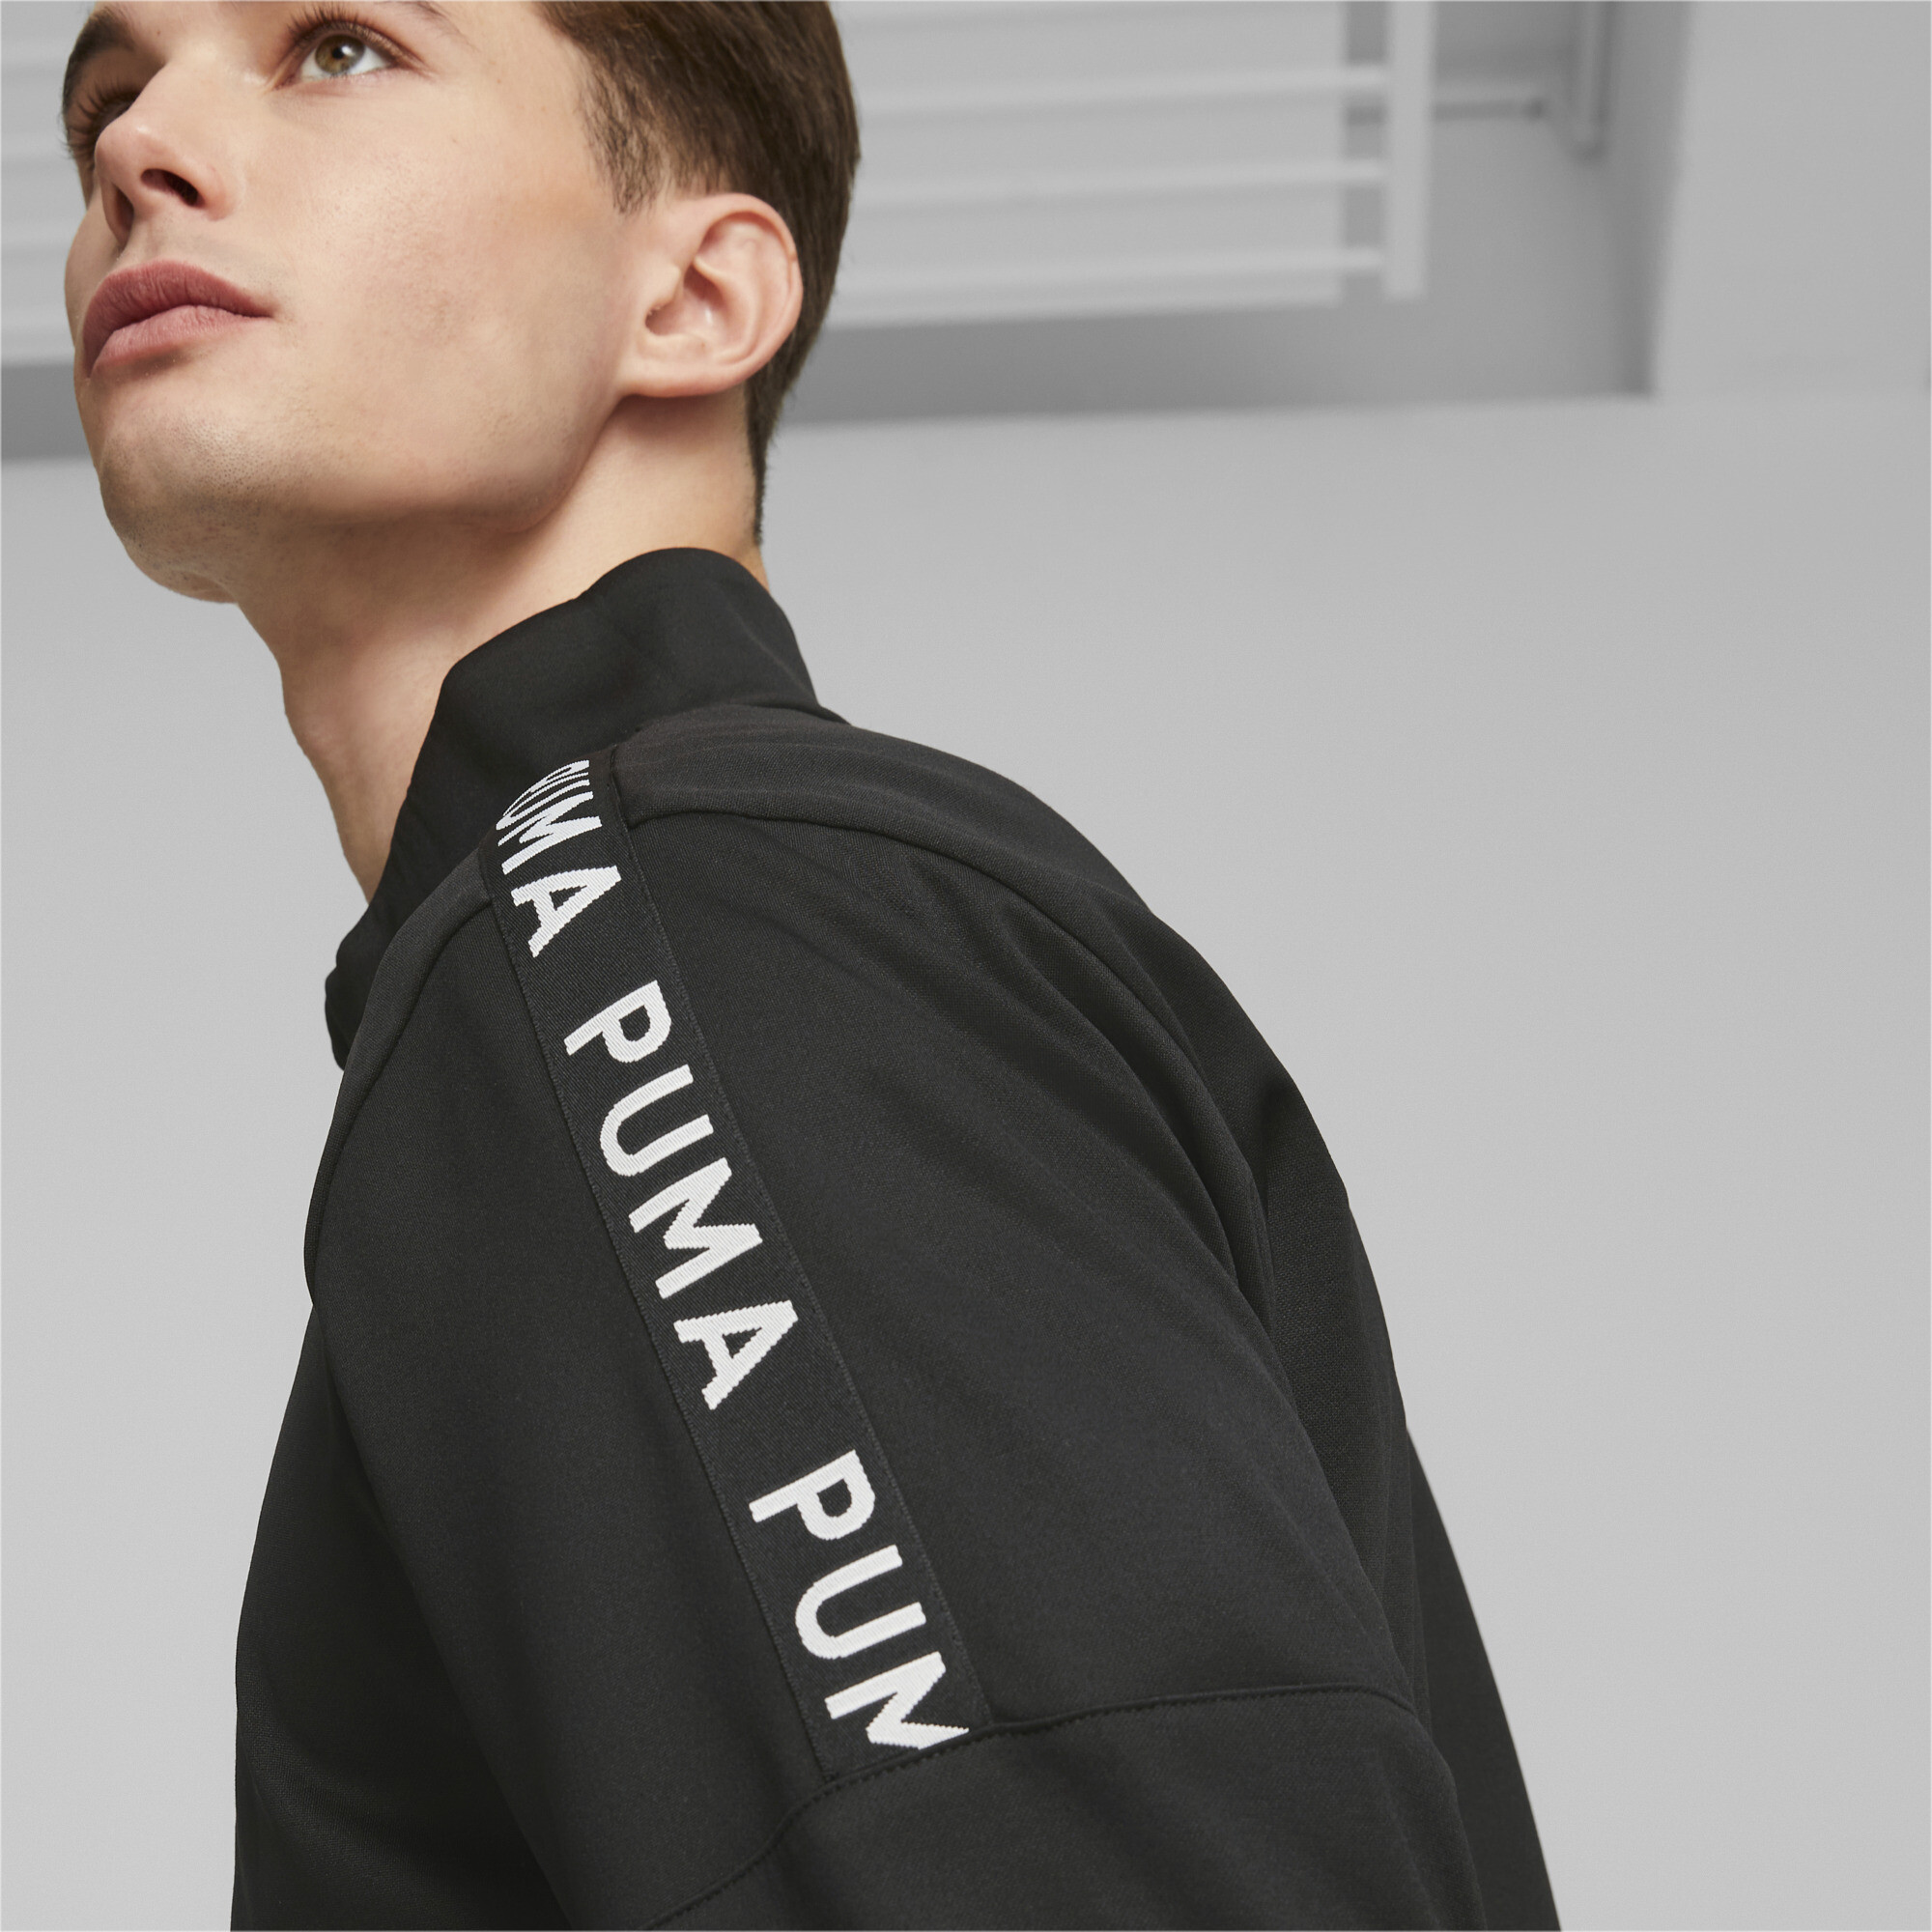 Men's PUMA Fit Light PWRFLEECE Full-Zip Training Jacket Men In Black, Size Small